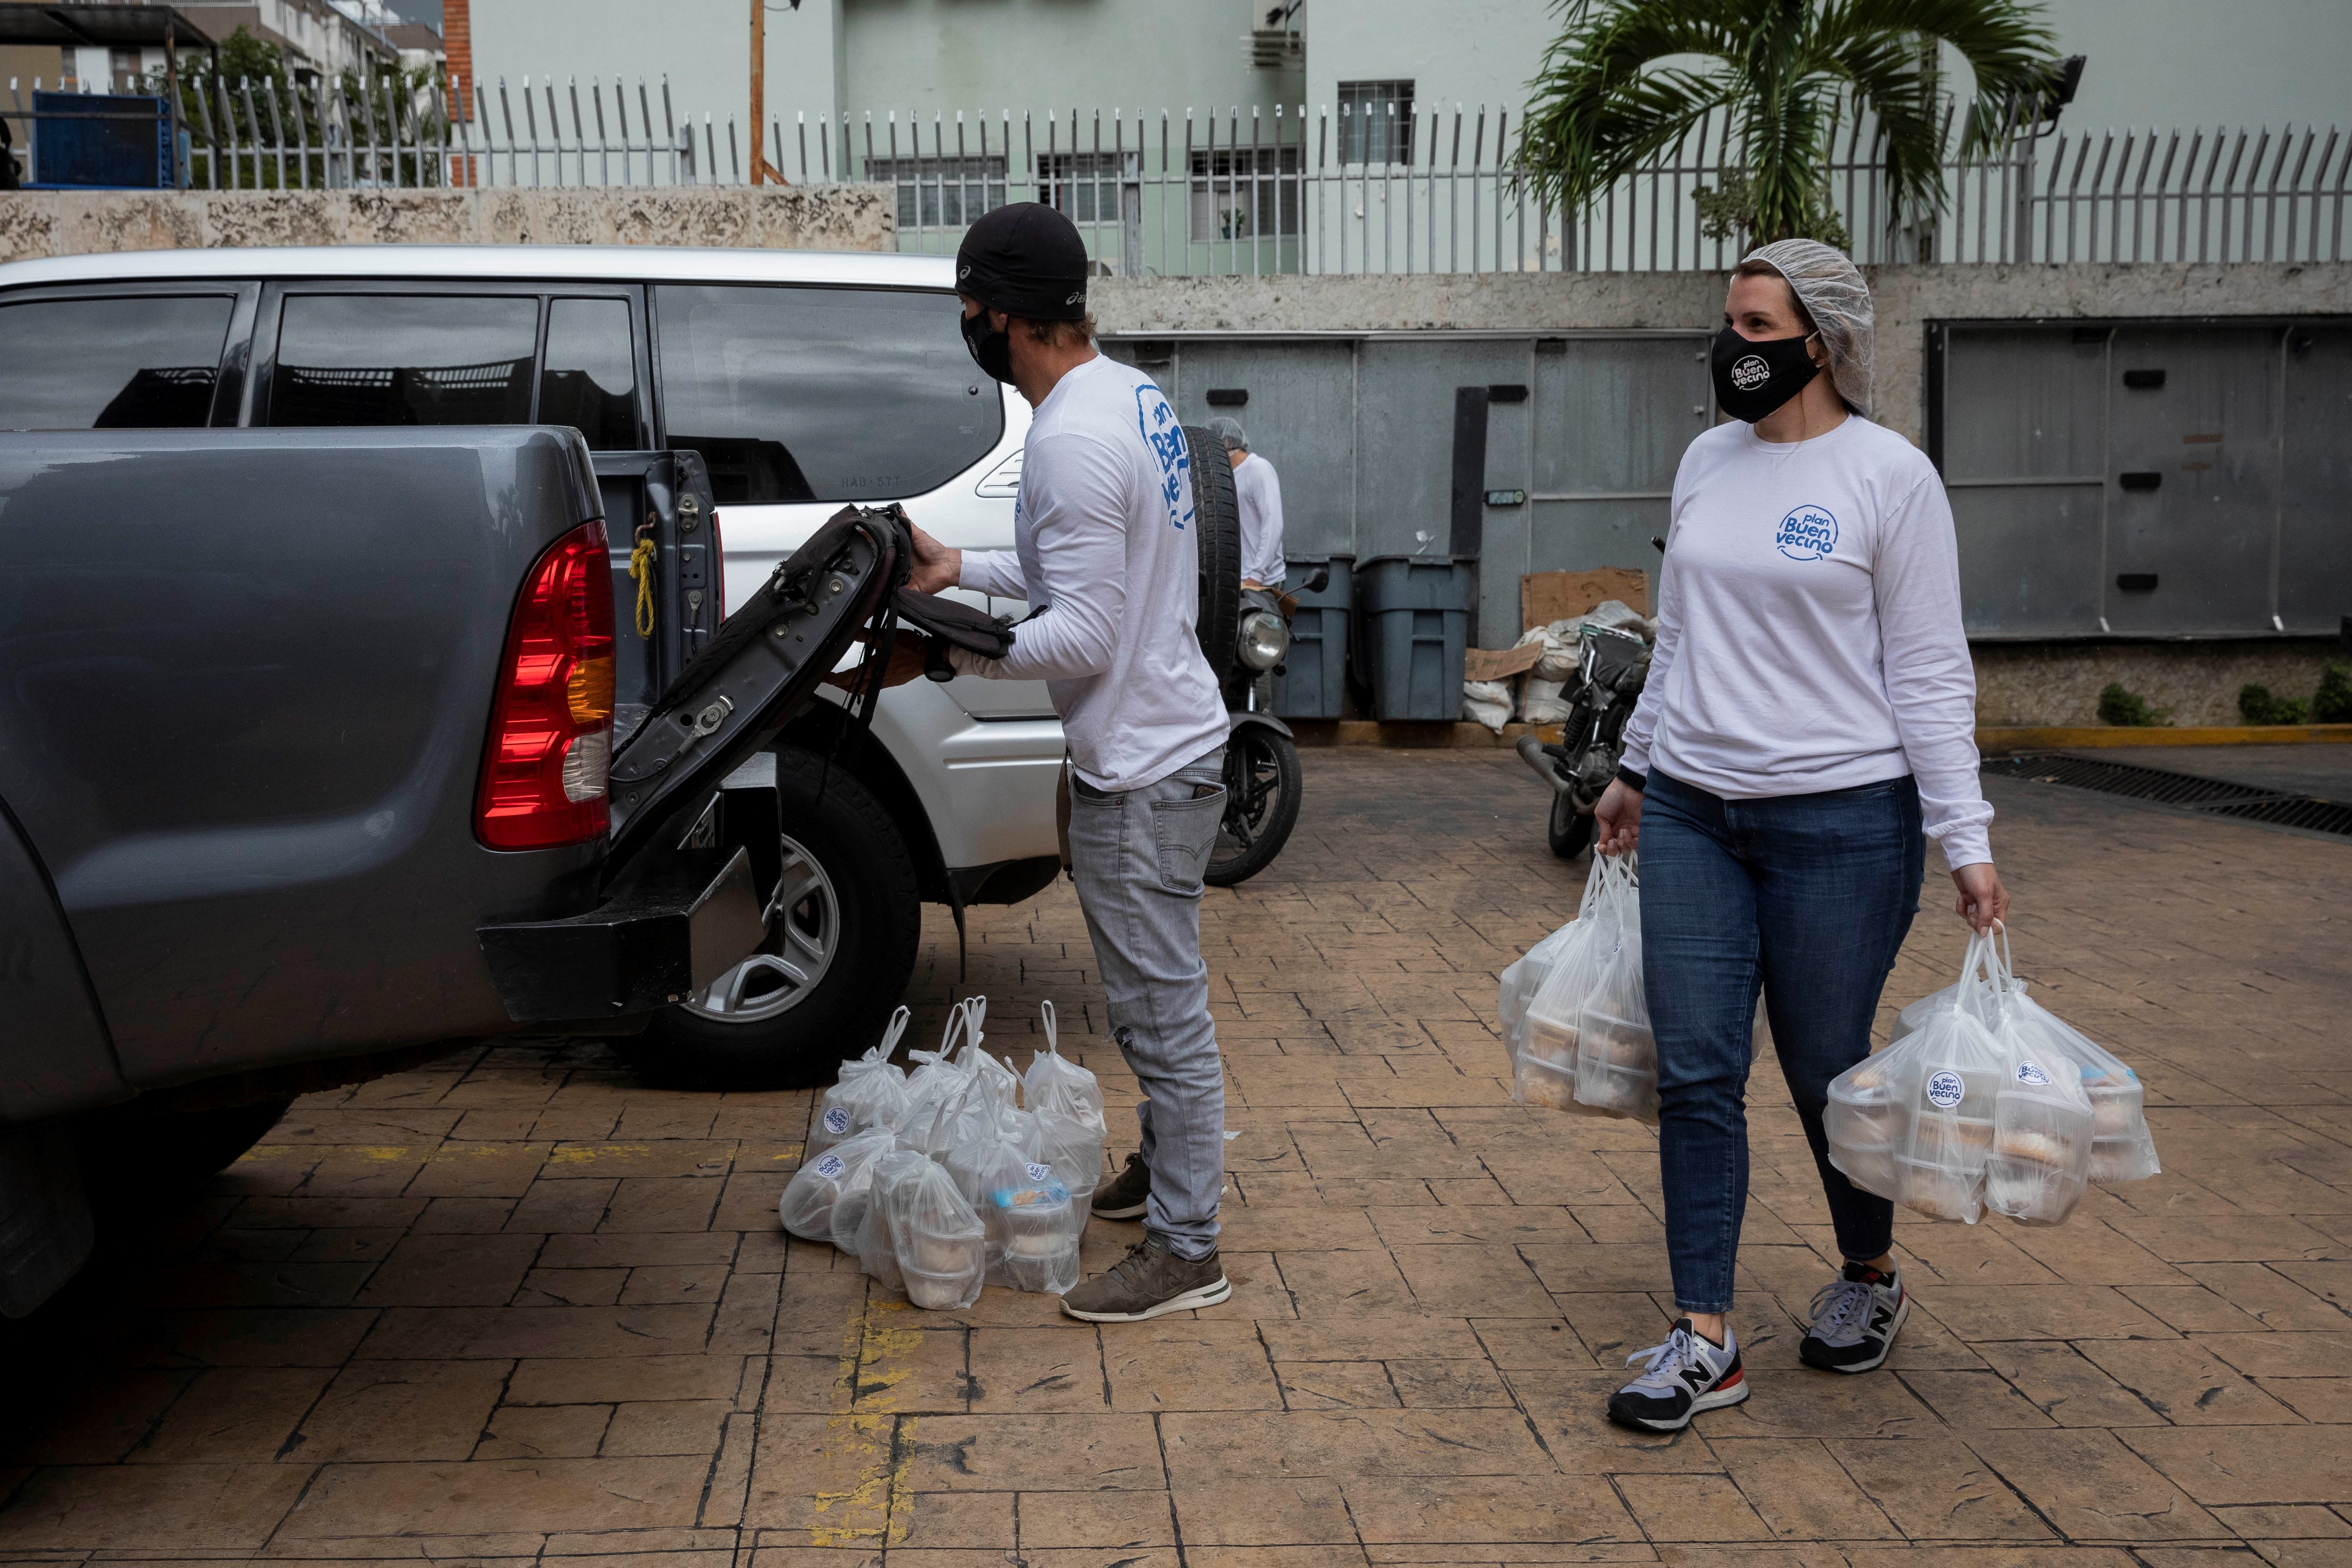 Solo el venezolano salva al venezolano: Las redes de ayuda atenúan la crisis (Fotos)